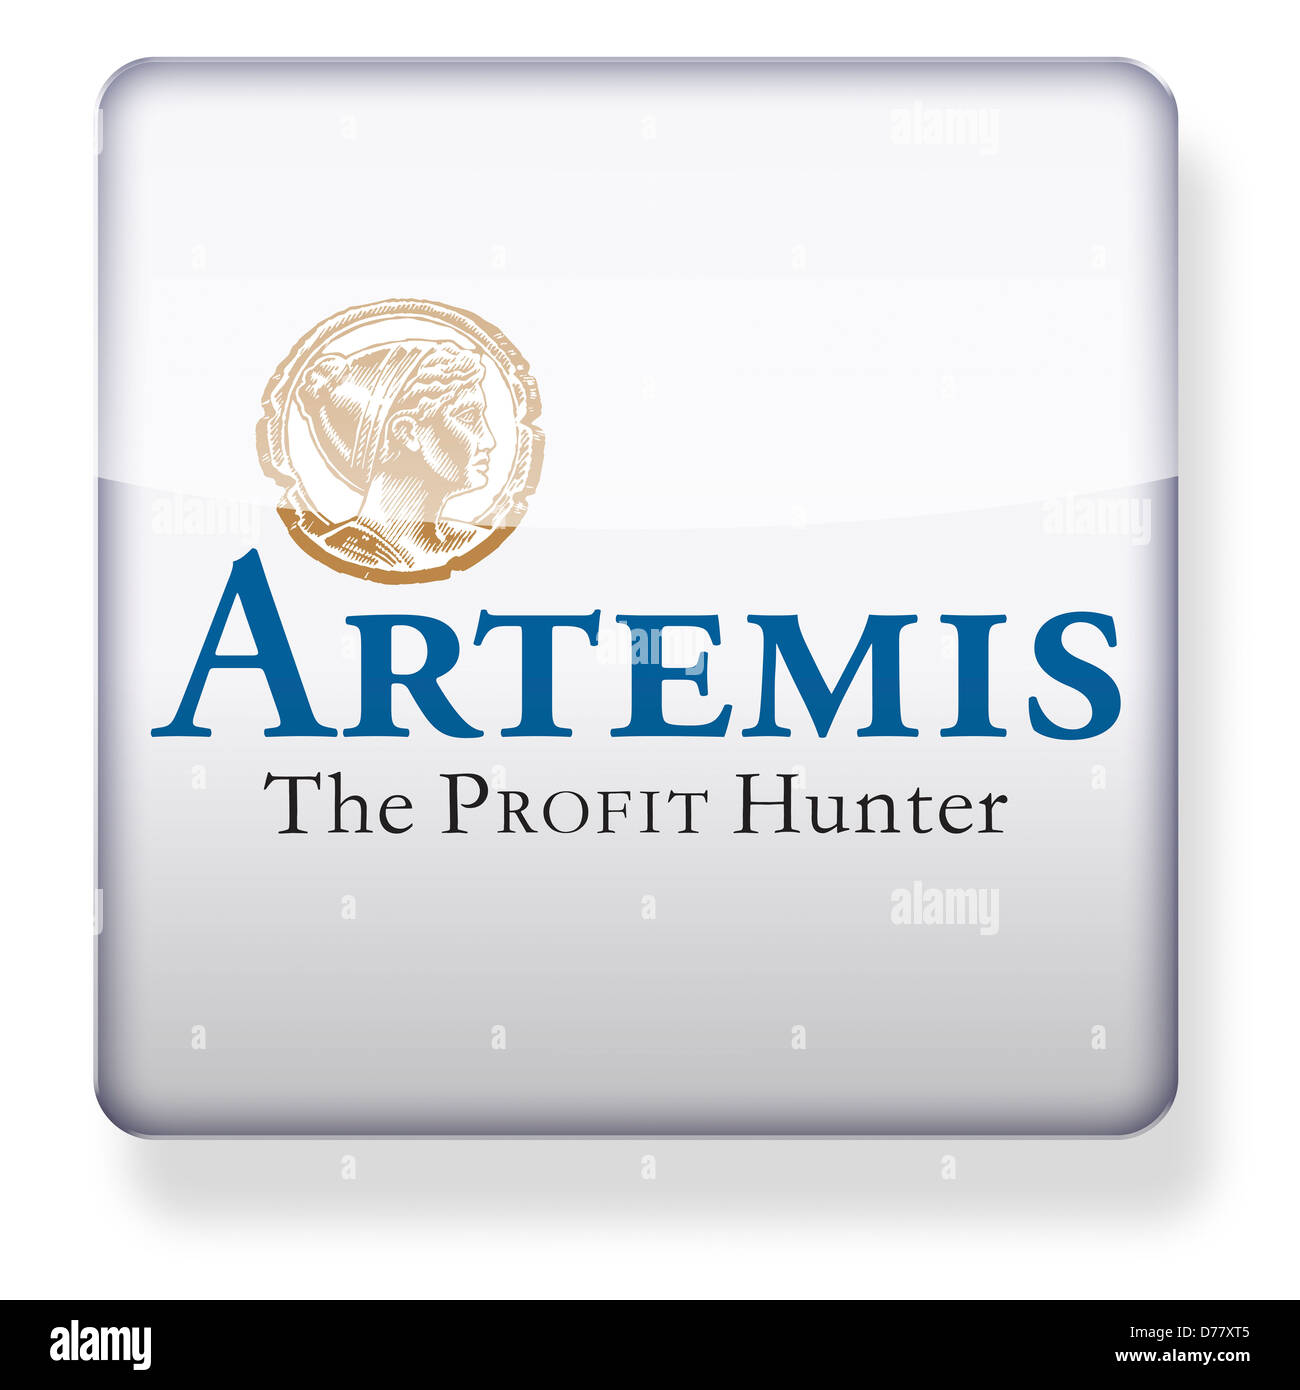 Artemis, el gestor del fondo logotipo como el icono de una aplicación. Trazado de recorte incluido. Foto de stock